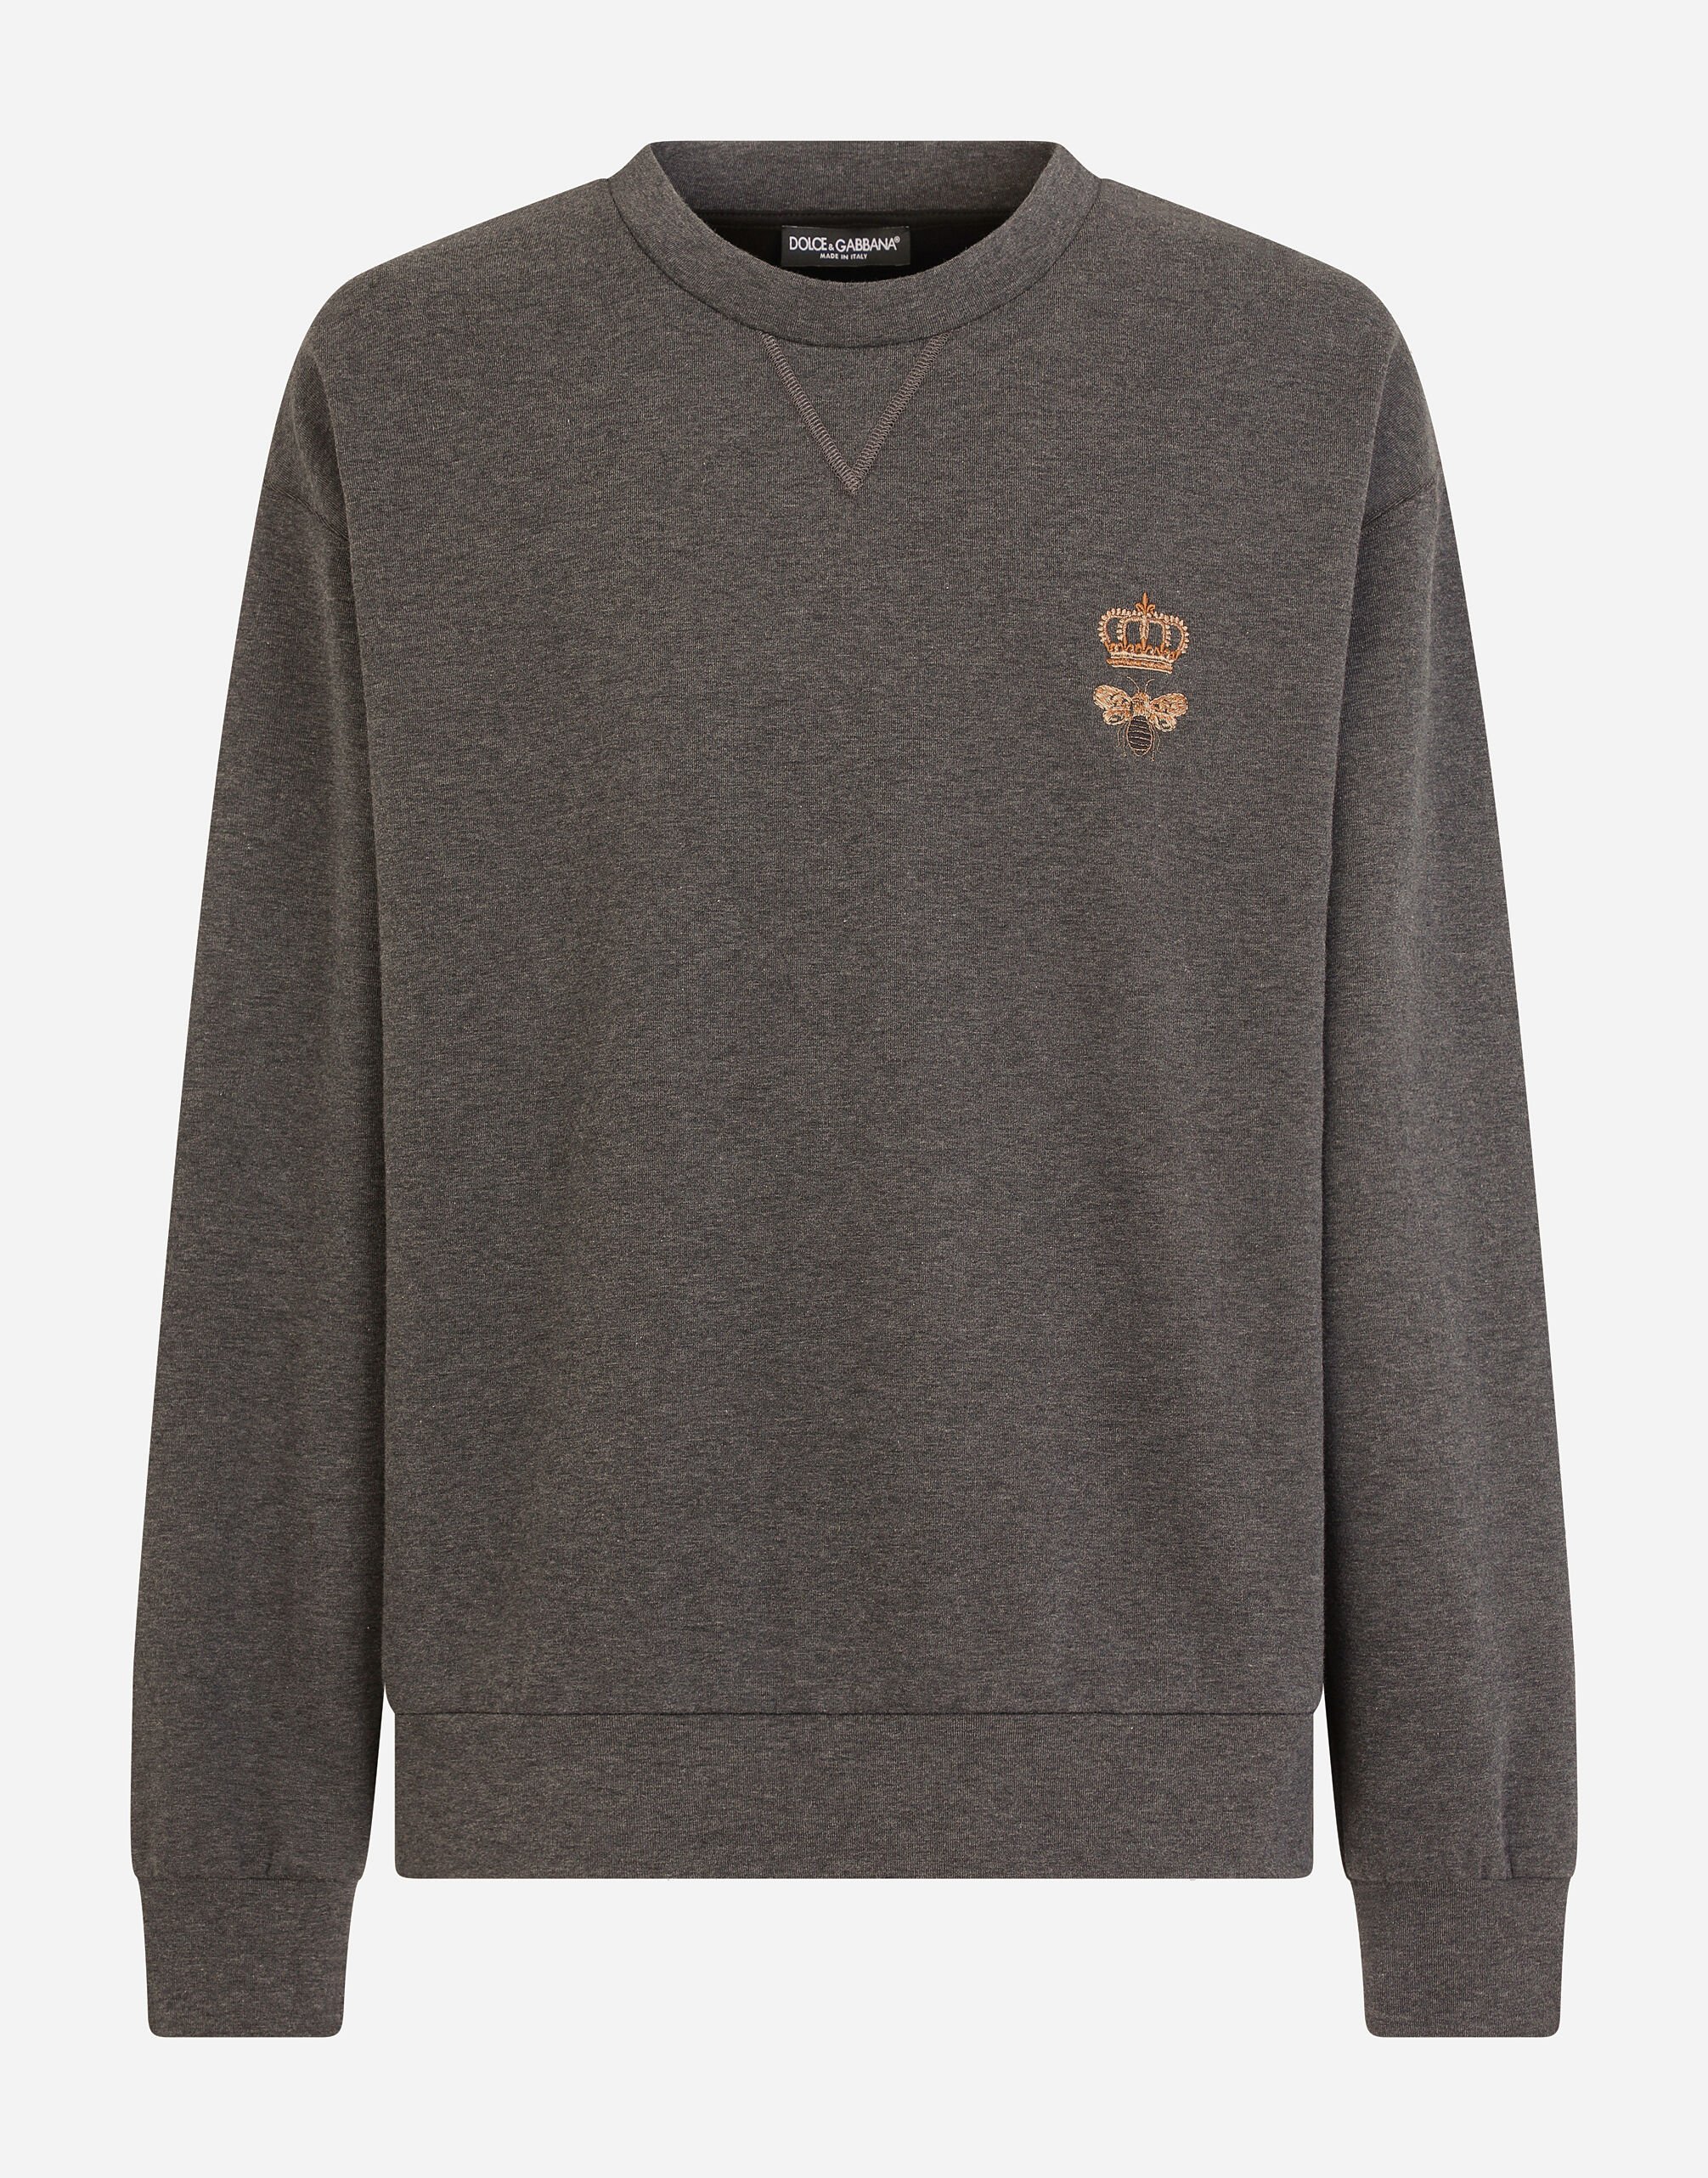 Dolce & Gabbana Jersey-Sweatshirt mit Stickerei Print G9AQVTHI7X6